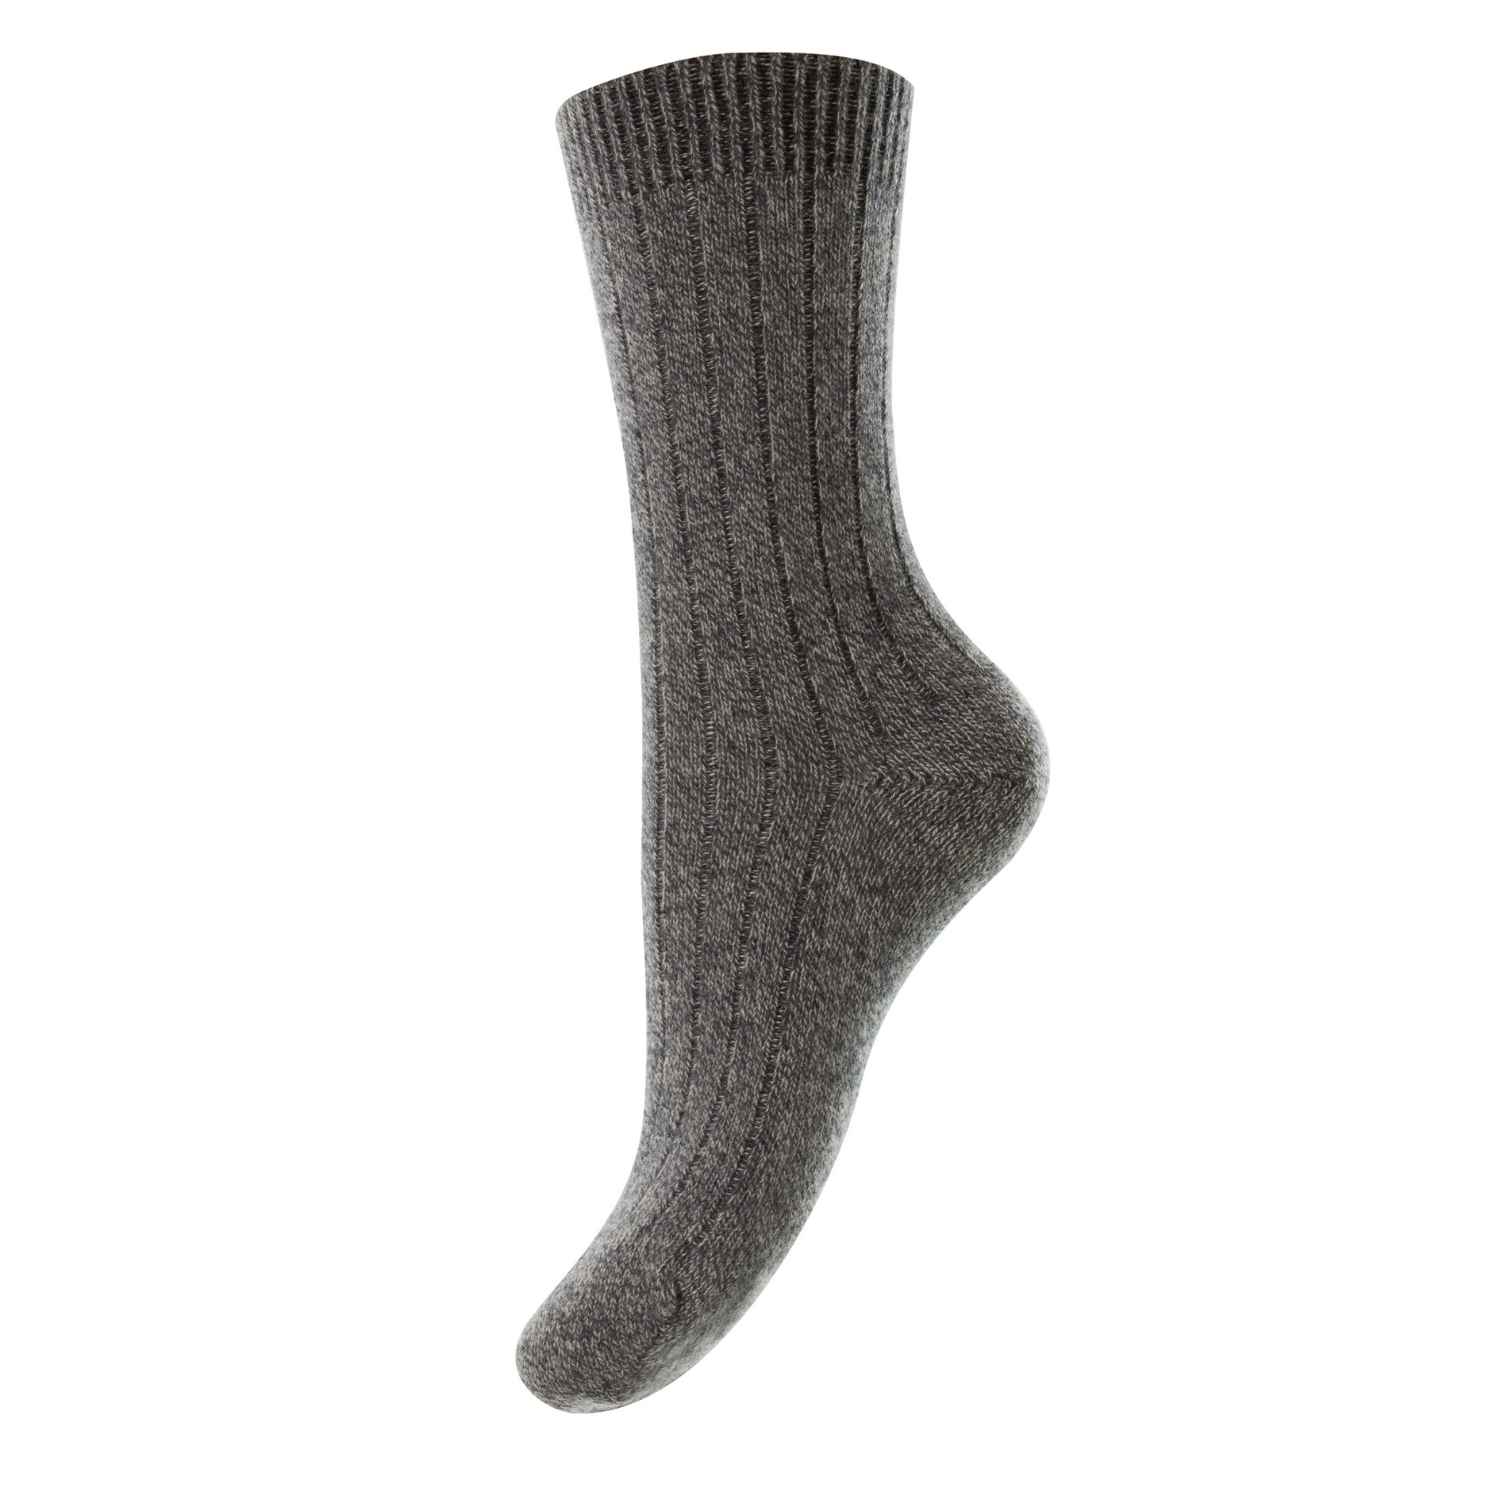 Pantherella women's socks - charcoal chine cashmere -